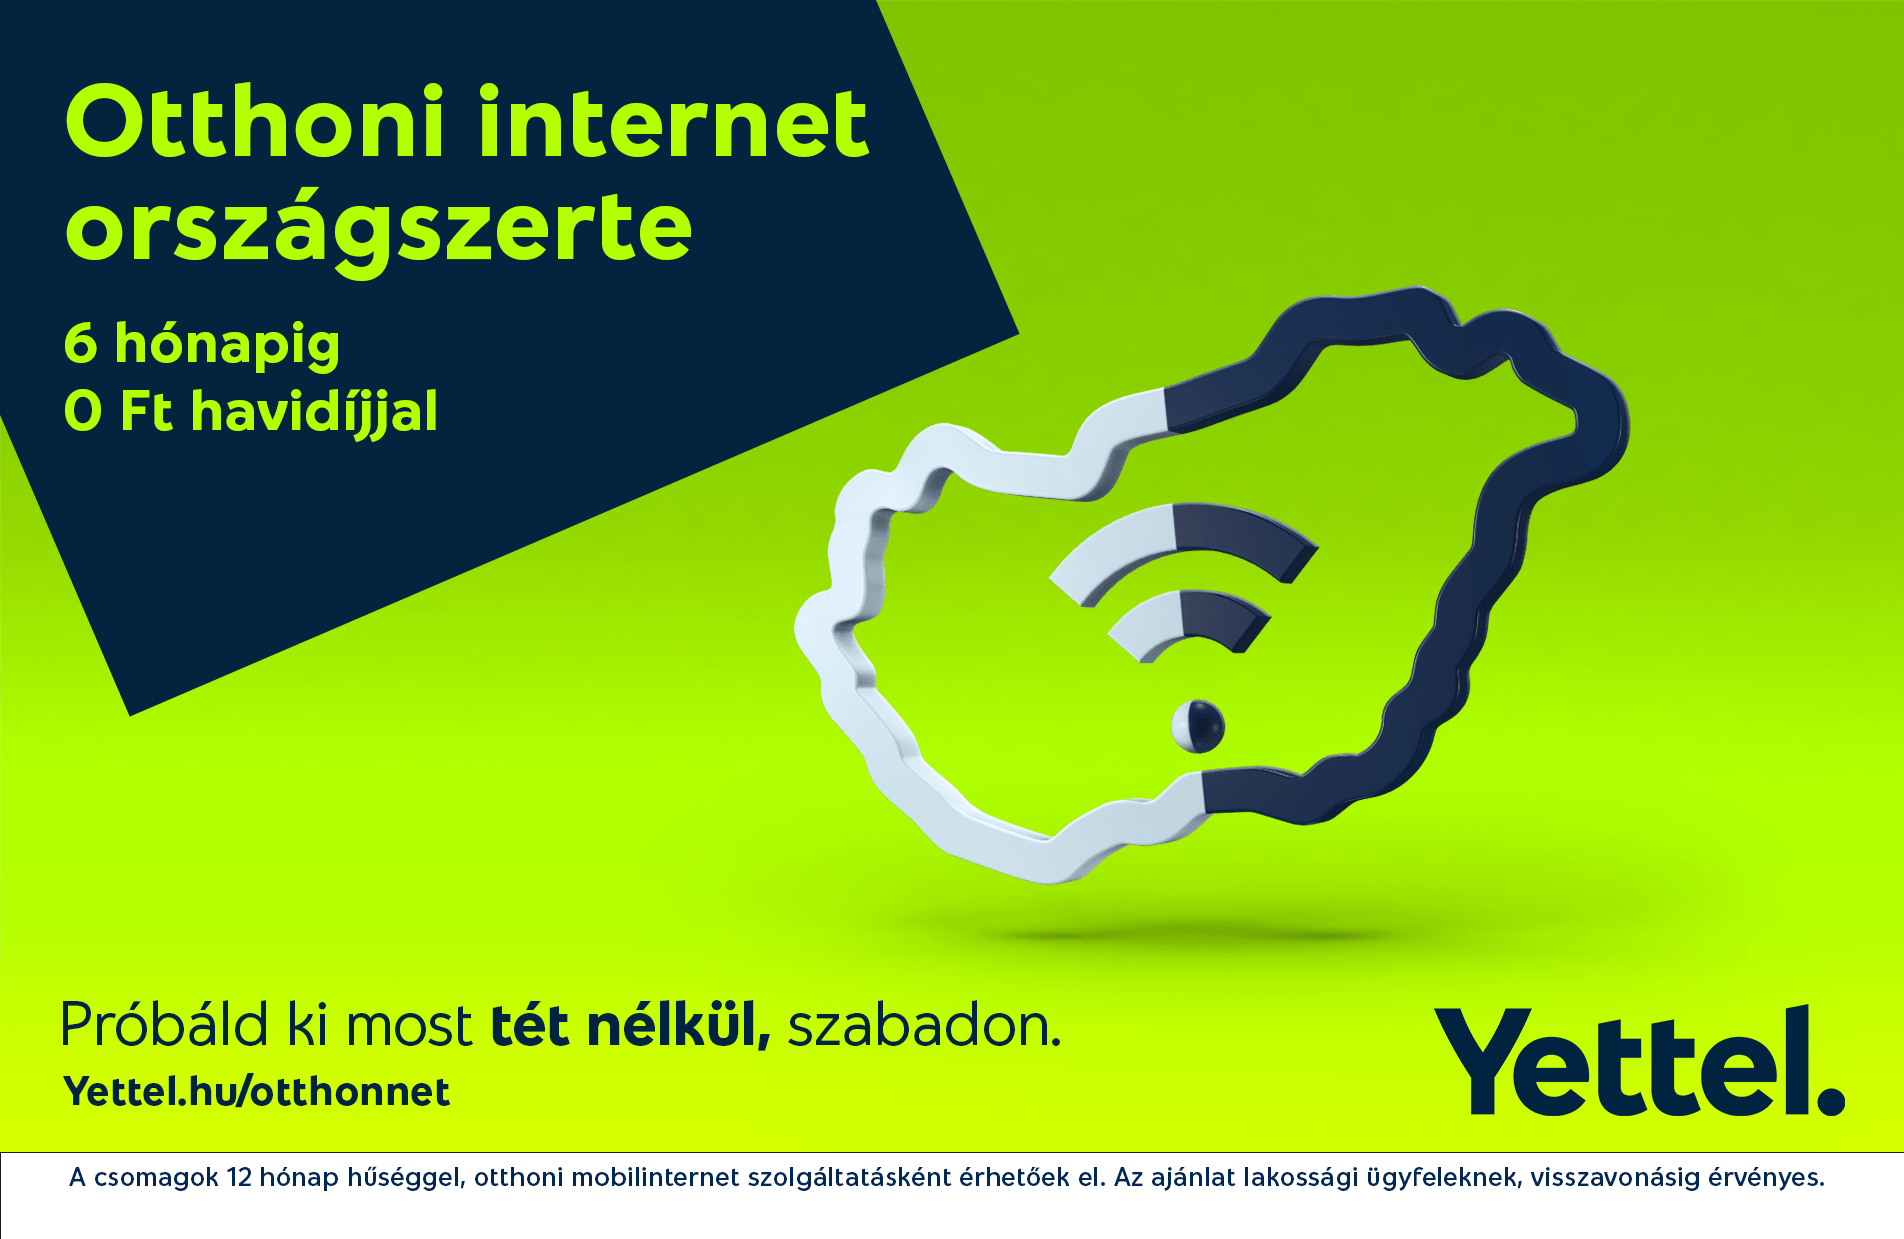 Kábel helyett mobil: 5G-s otthoni internetszolgáltatást indít a Yettel